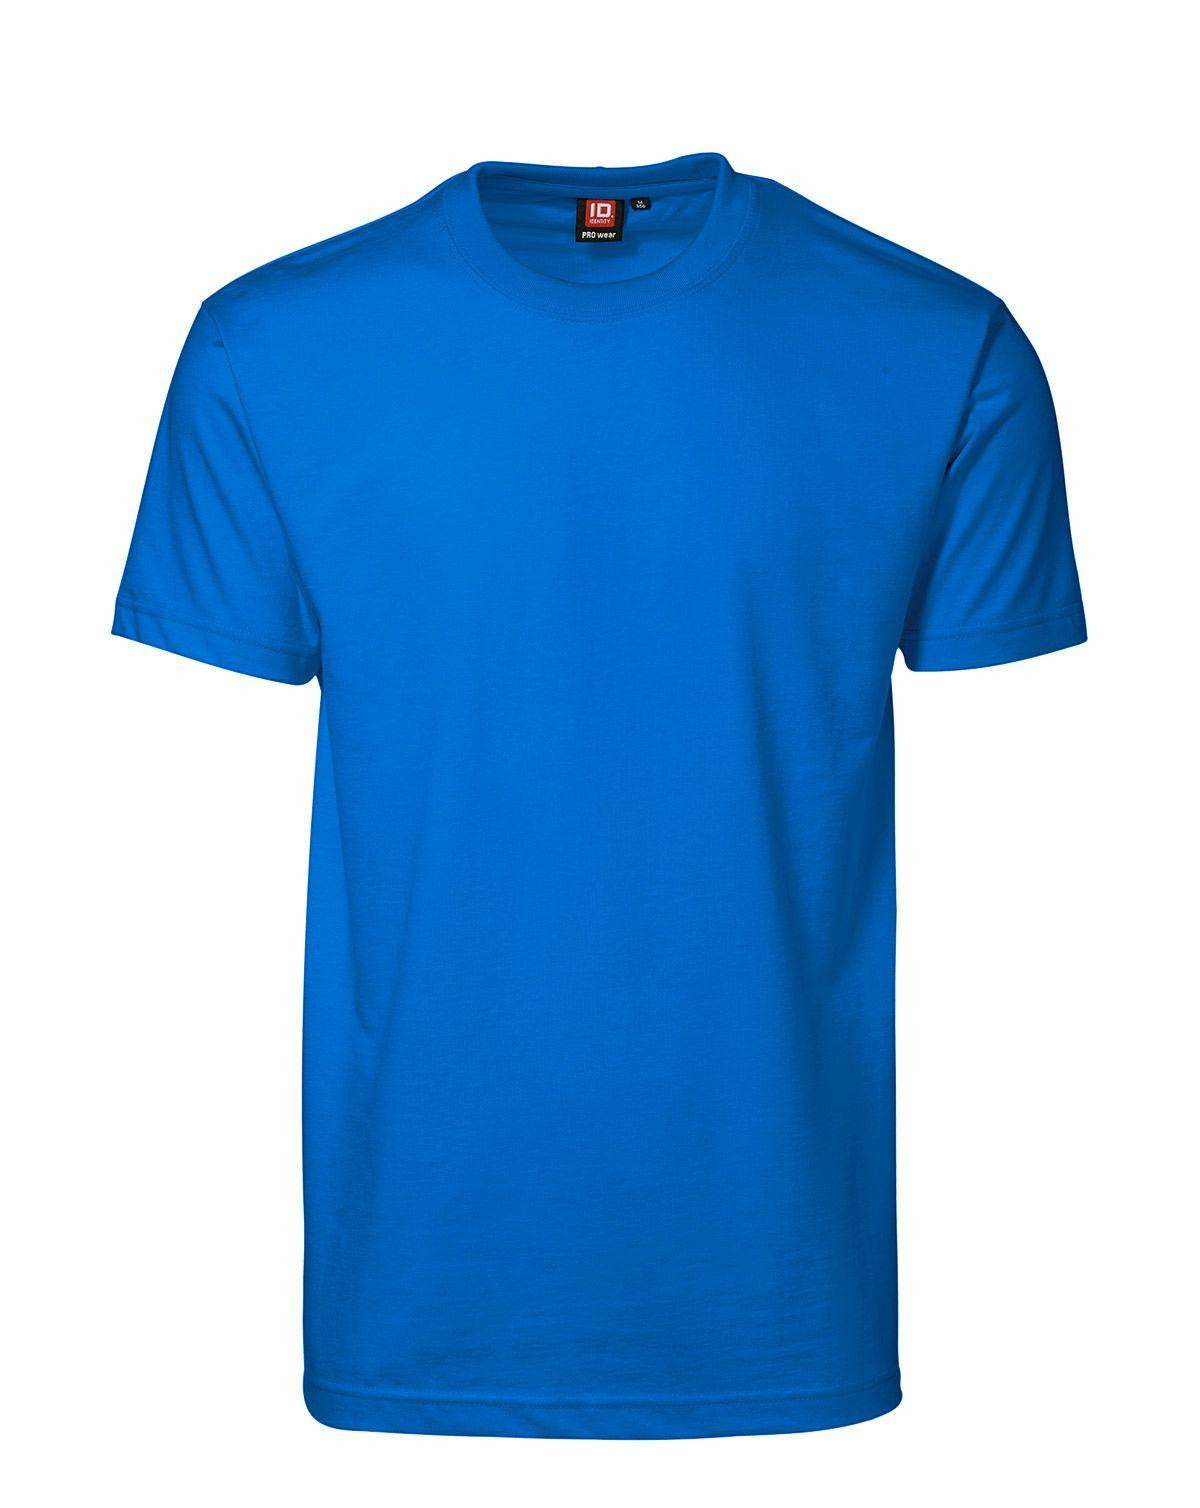 ID PRO Wear T-shirt til Herre (Azure, 3XL)